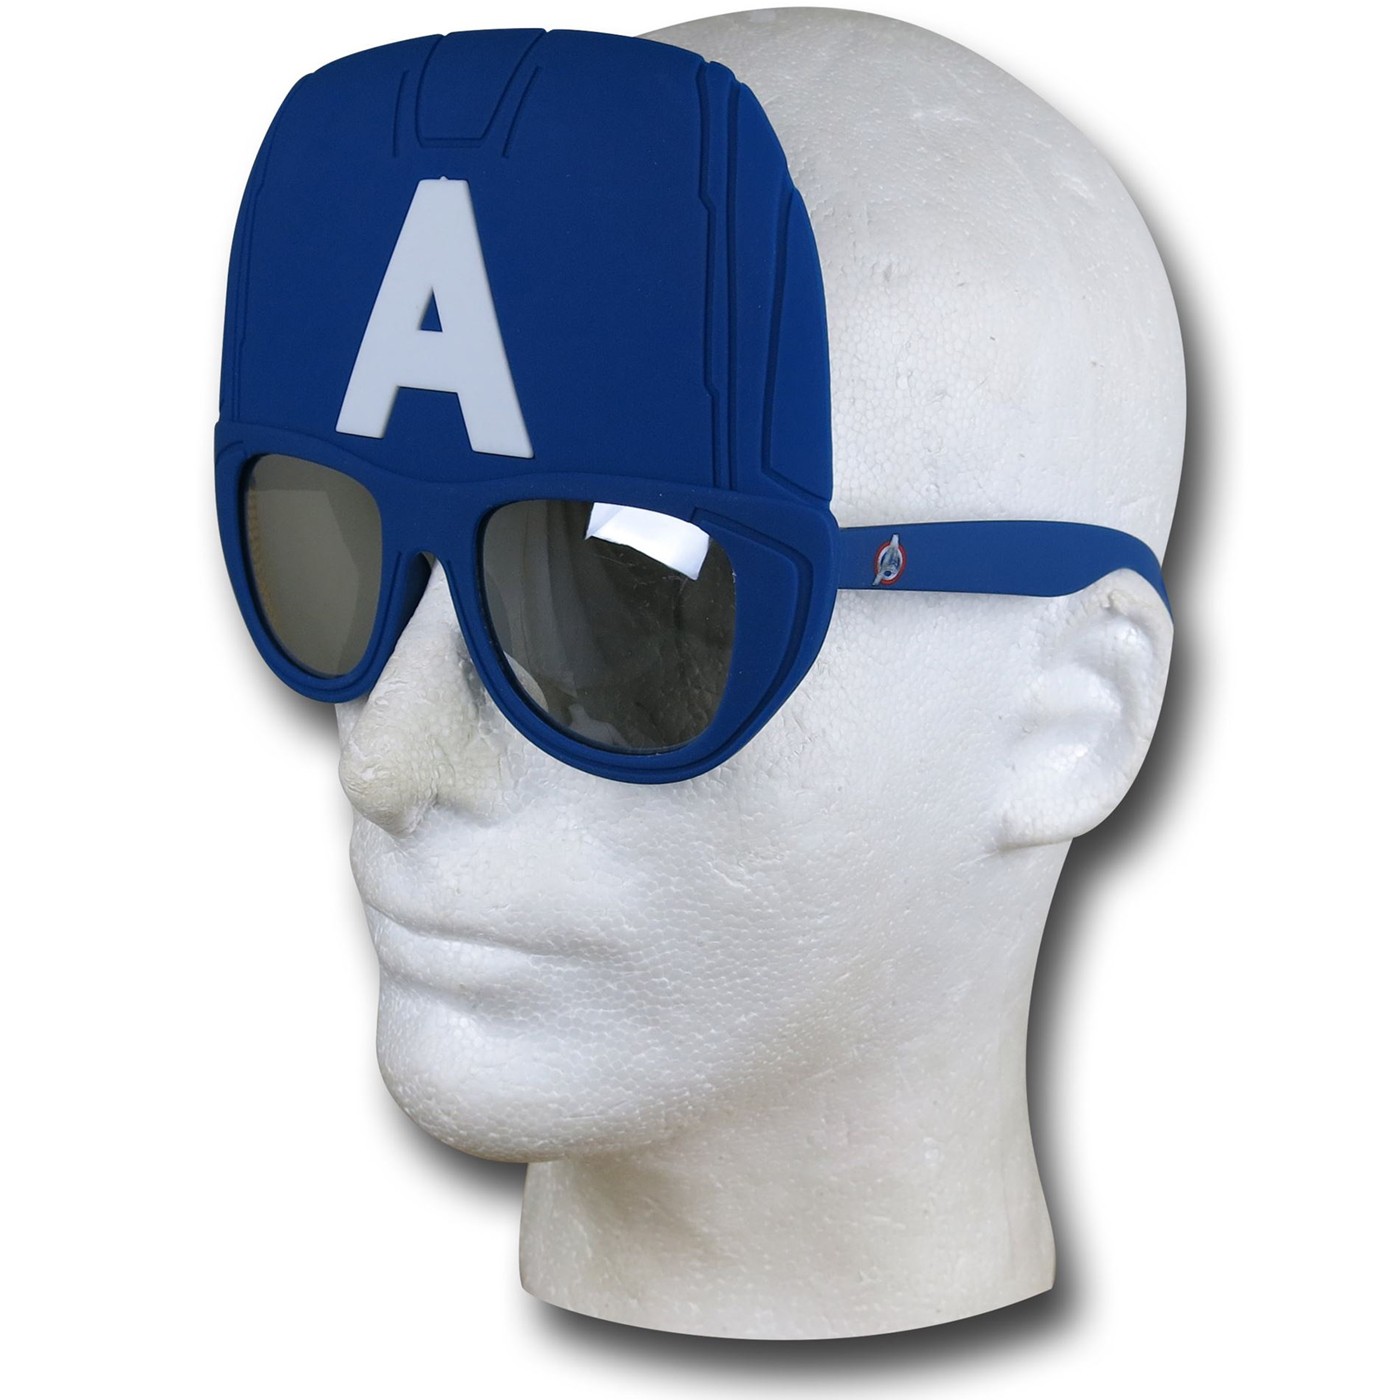 Captain America Costume Sunglasses